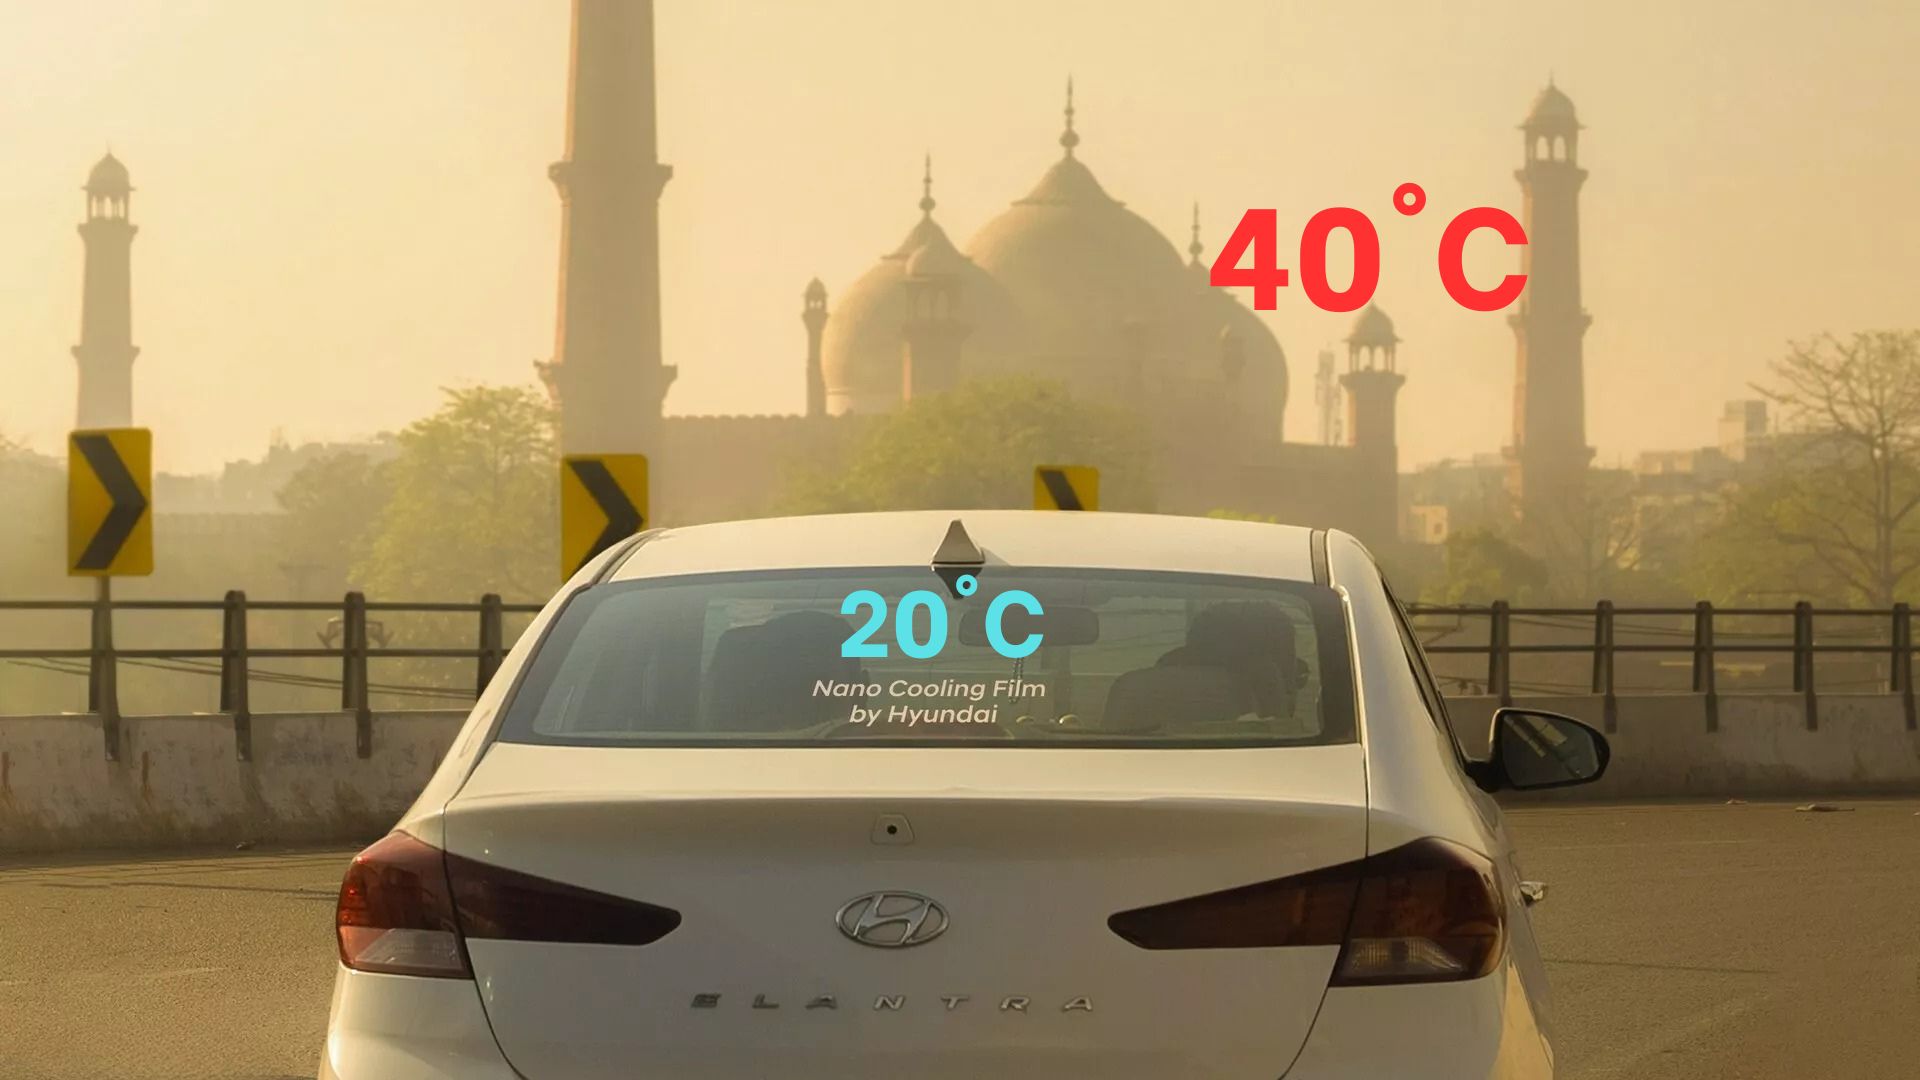 Nóng đến đâu xe Hyundai cũng luôn mát, đó là nhờ hãng bổ sung thứ này: Giảm 10 độ mà không cần 'phá máy', xe cũ cũng dùng được- Ảnh 4.